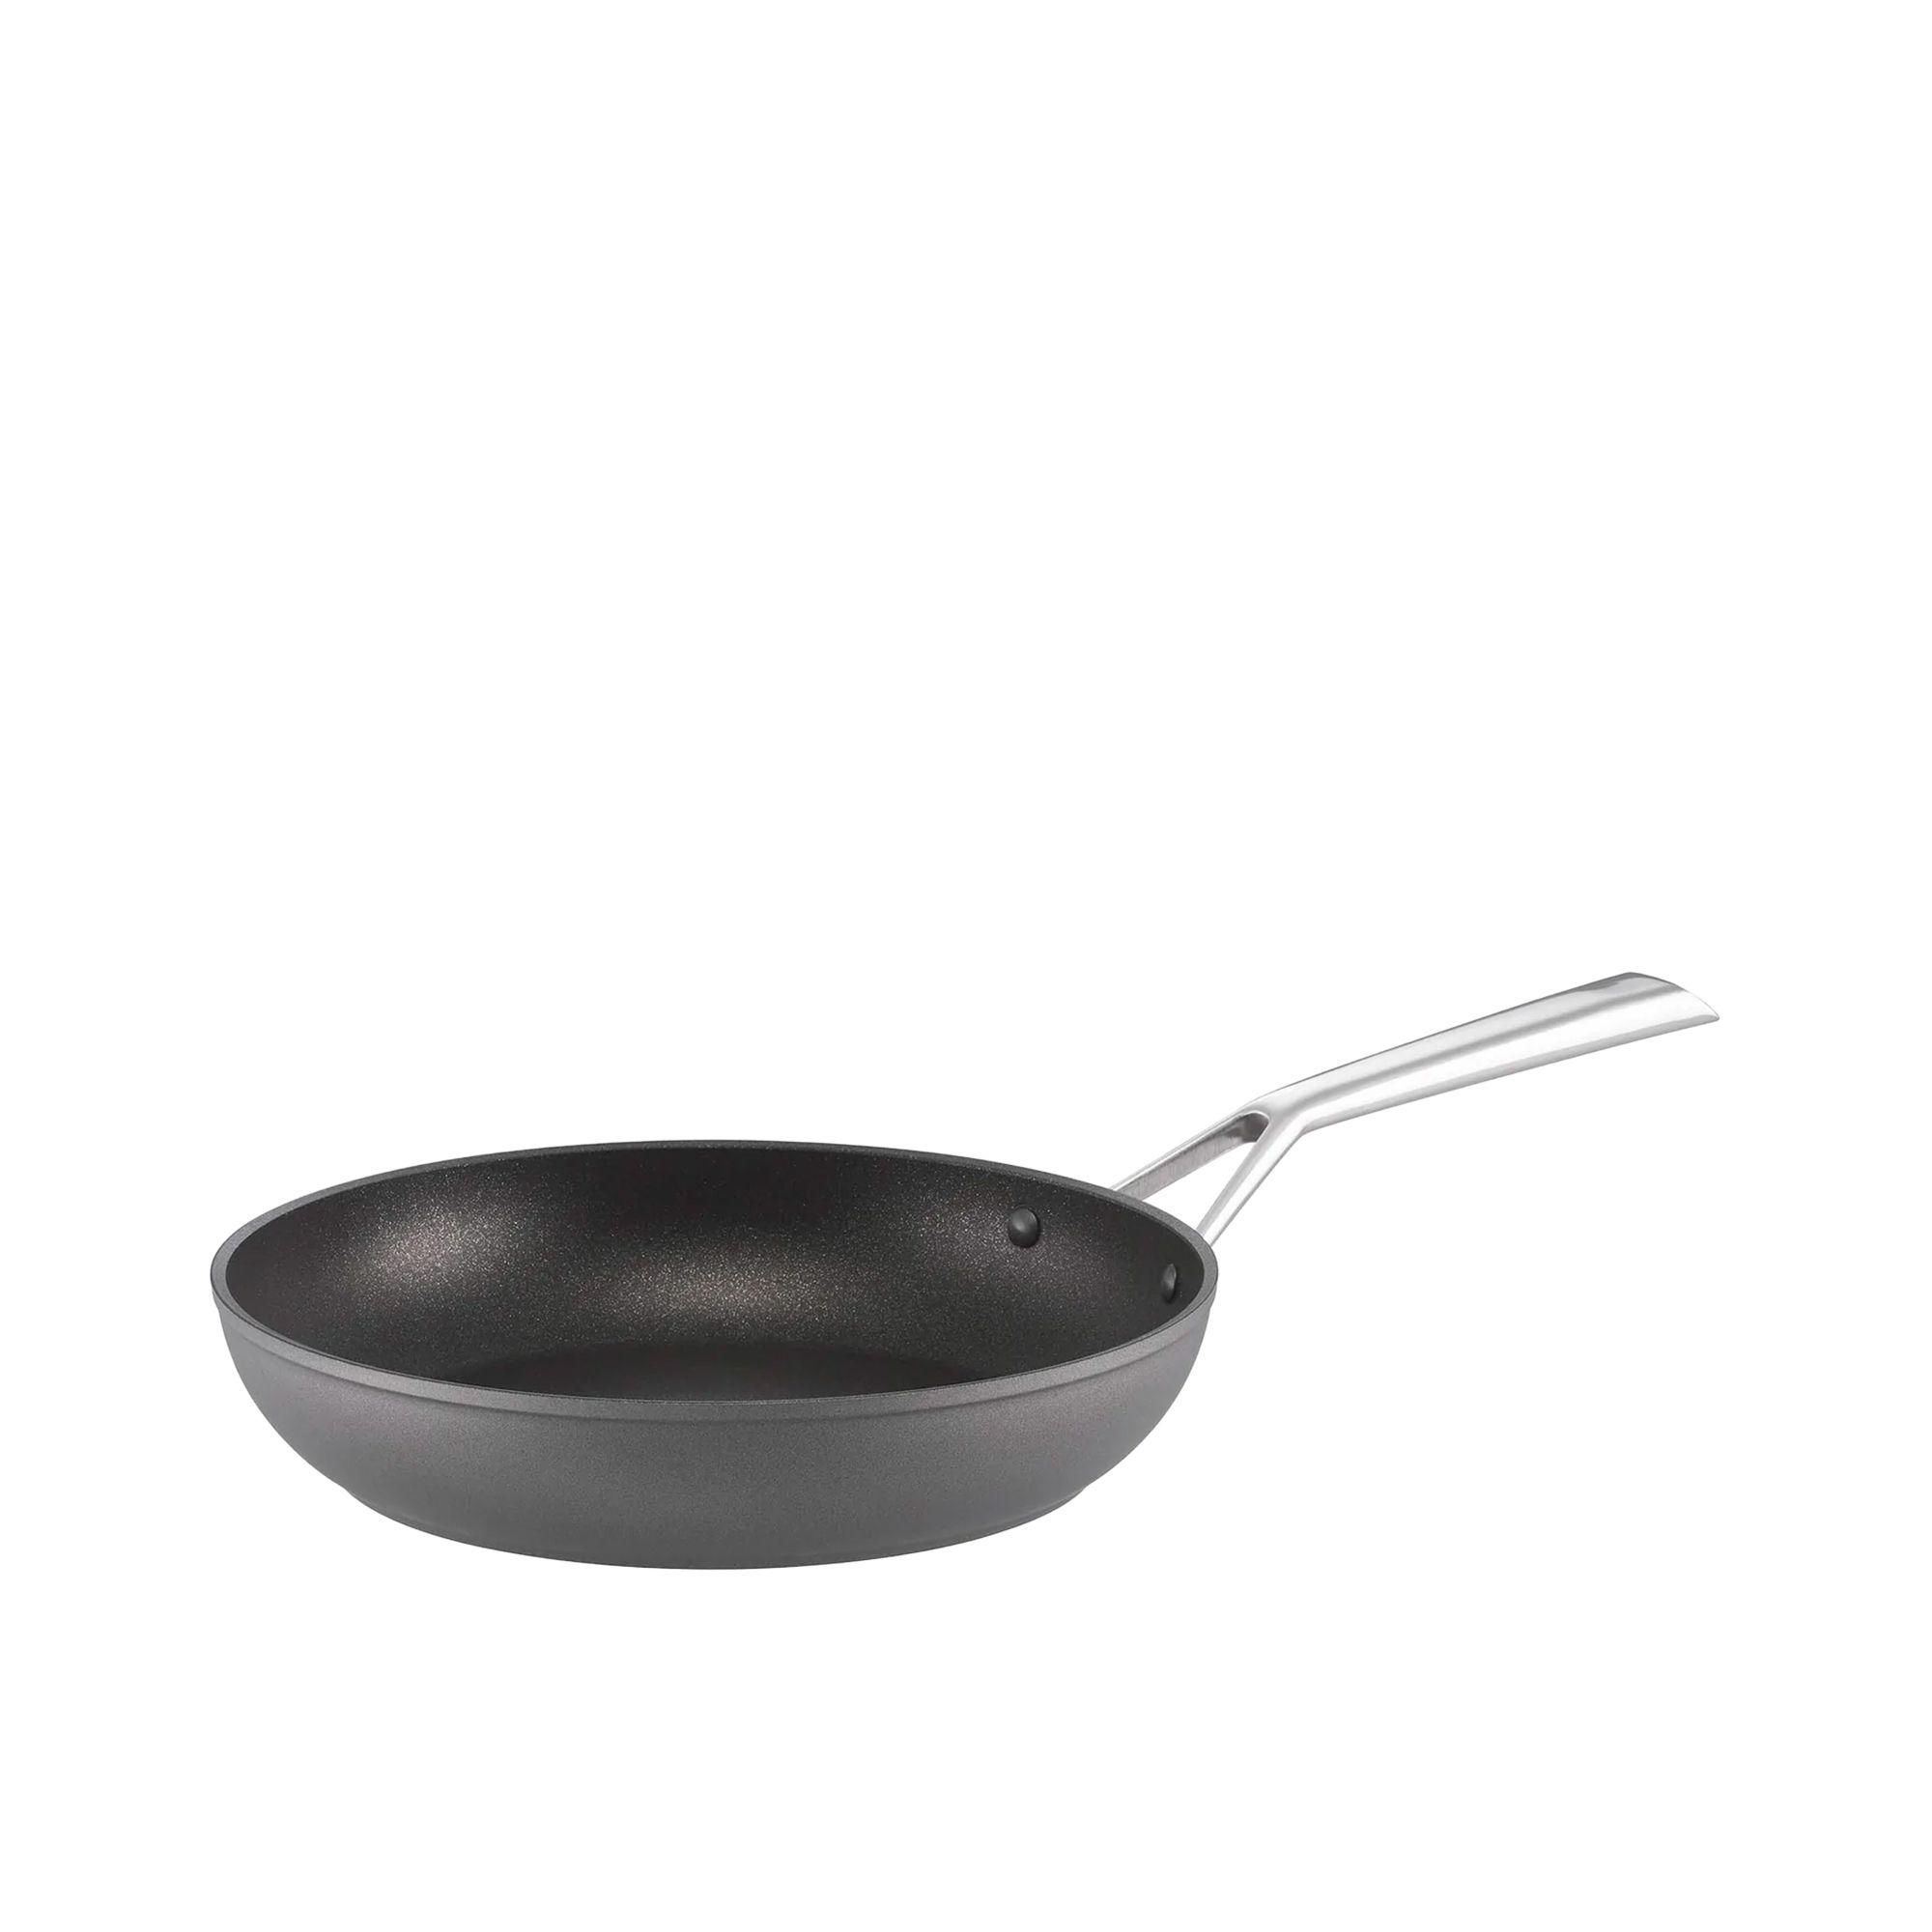 Essteele Per Bellezza 5pc Non Stick Cookware Set Grey Image 6